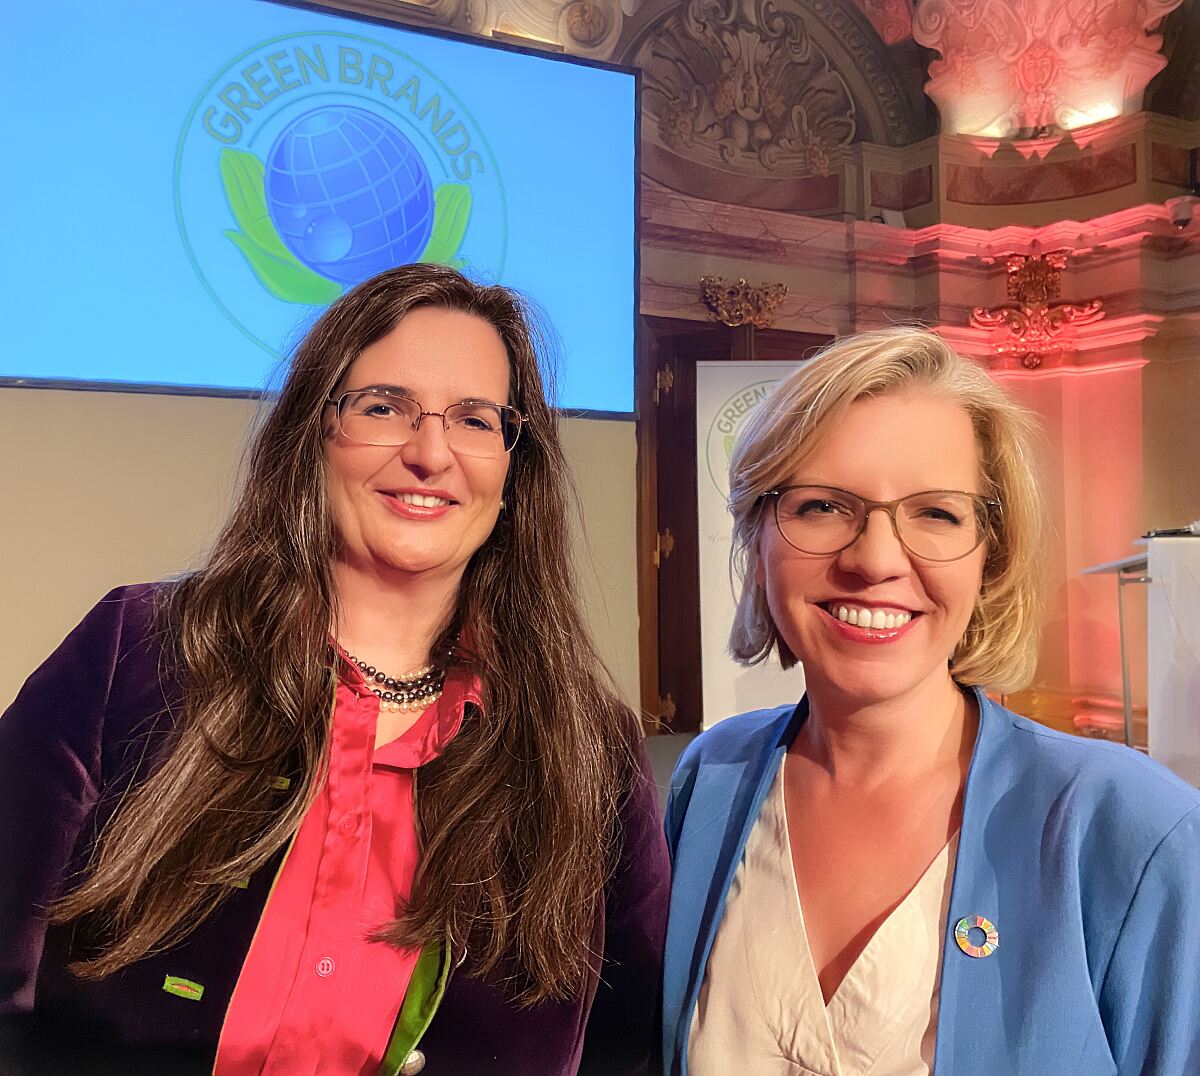 Brau Union Österreich erneut mit unabhängigem Siegel für Nachhaltigkeitsengagement ausgezeichnet